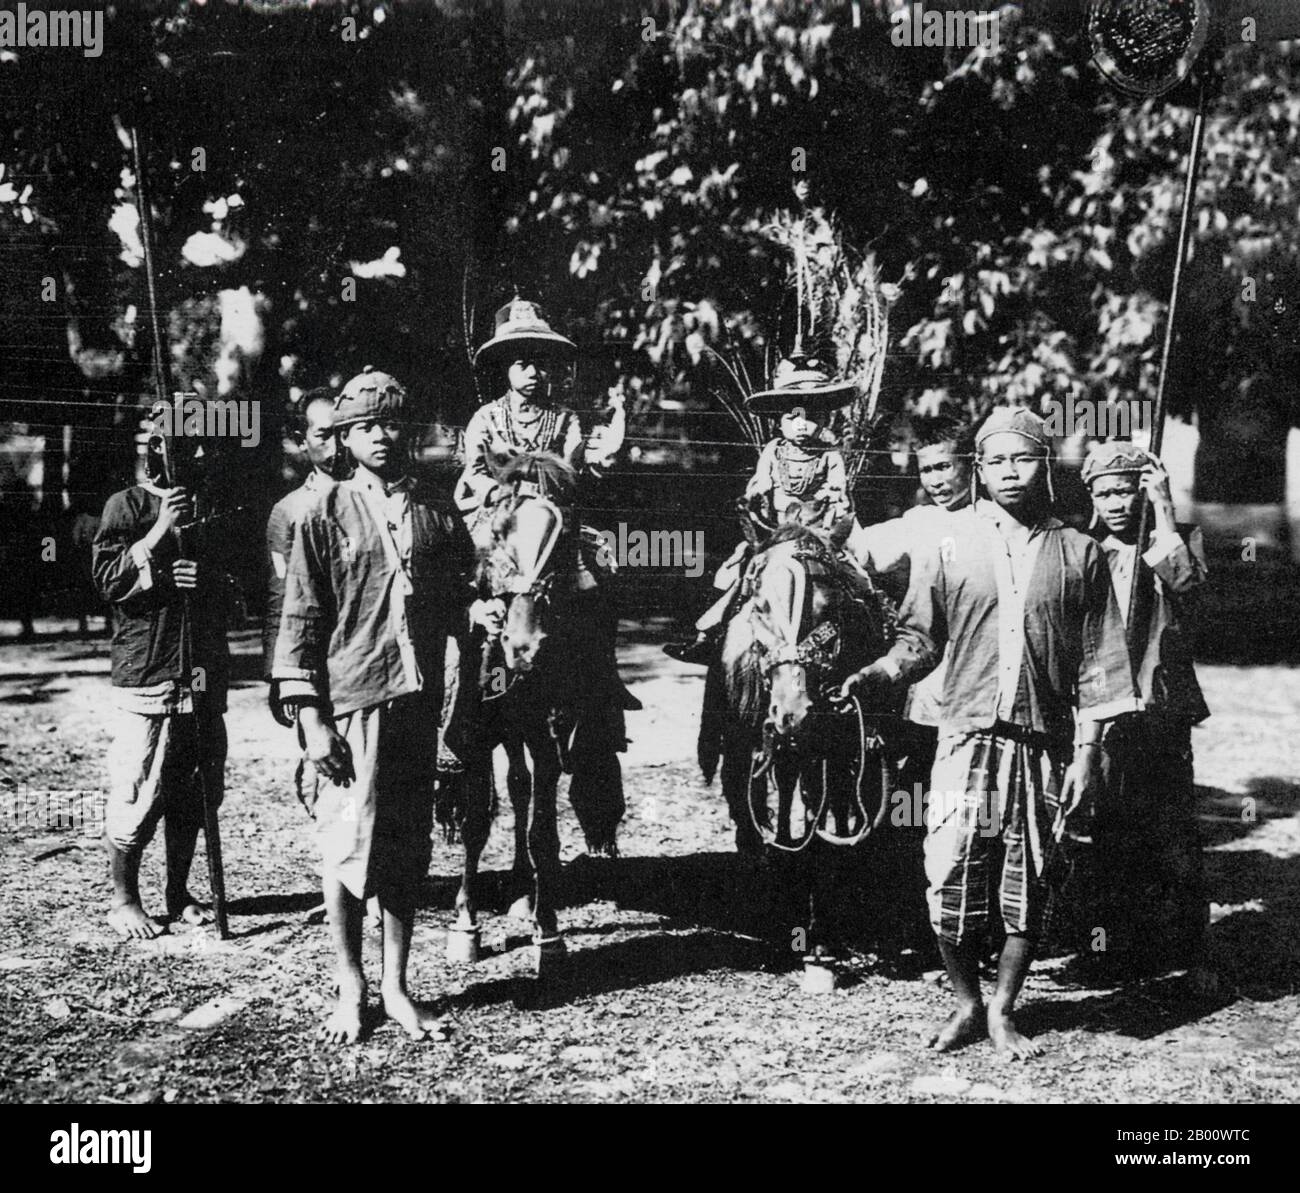 Laos: Due dei tanti bambini di HM Sisavang Vong si cavalcano a cavallo con i servitori in presenza, fotografati nel 1919. Sisavang Phoulivong (1885 - 1959) fu il re di Luang Prabang e successivamente il regno del Laos. Suo padre era il re Zakarine e sua madre era la regina Thongsy. Ha studiato a Lycée Chasseloup-Lubat, Saigon, e a l'École coloniale a Parigi. Era conosciuto come un re "playboy" con fino a 50 bambini da ben 15 mogli. Foto Stock